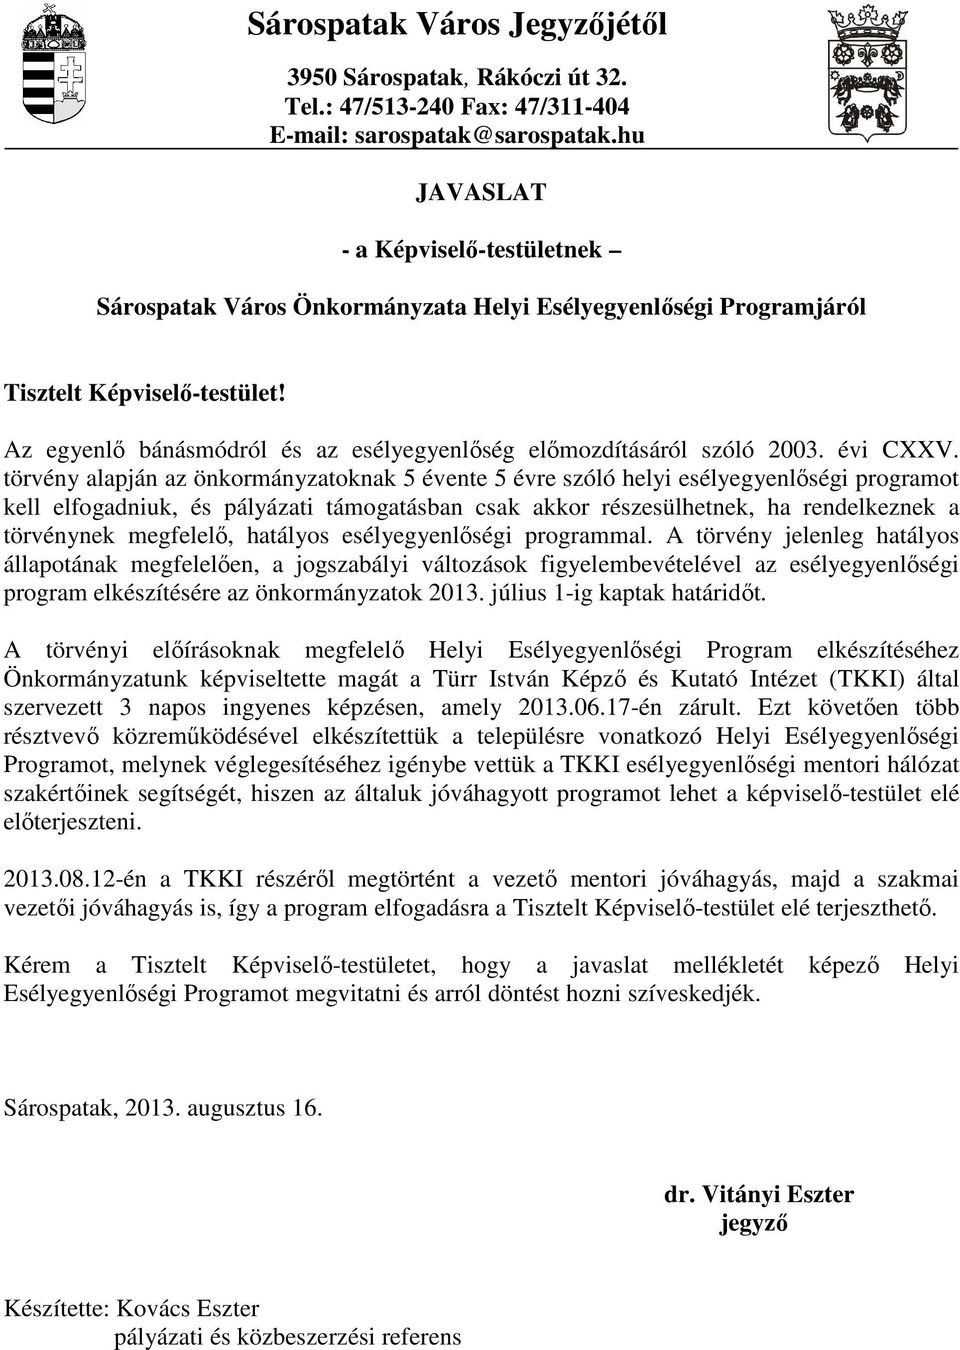 Az egyenlı bánásmódról és az esélyegyenlıség elımozdításáról szóló 2003. évi CXXV.